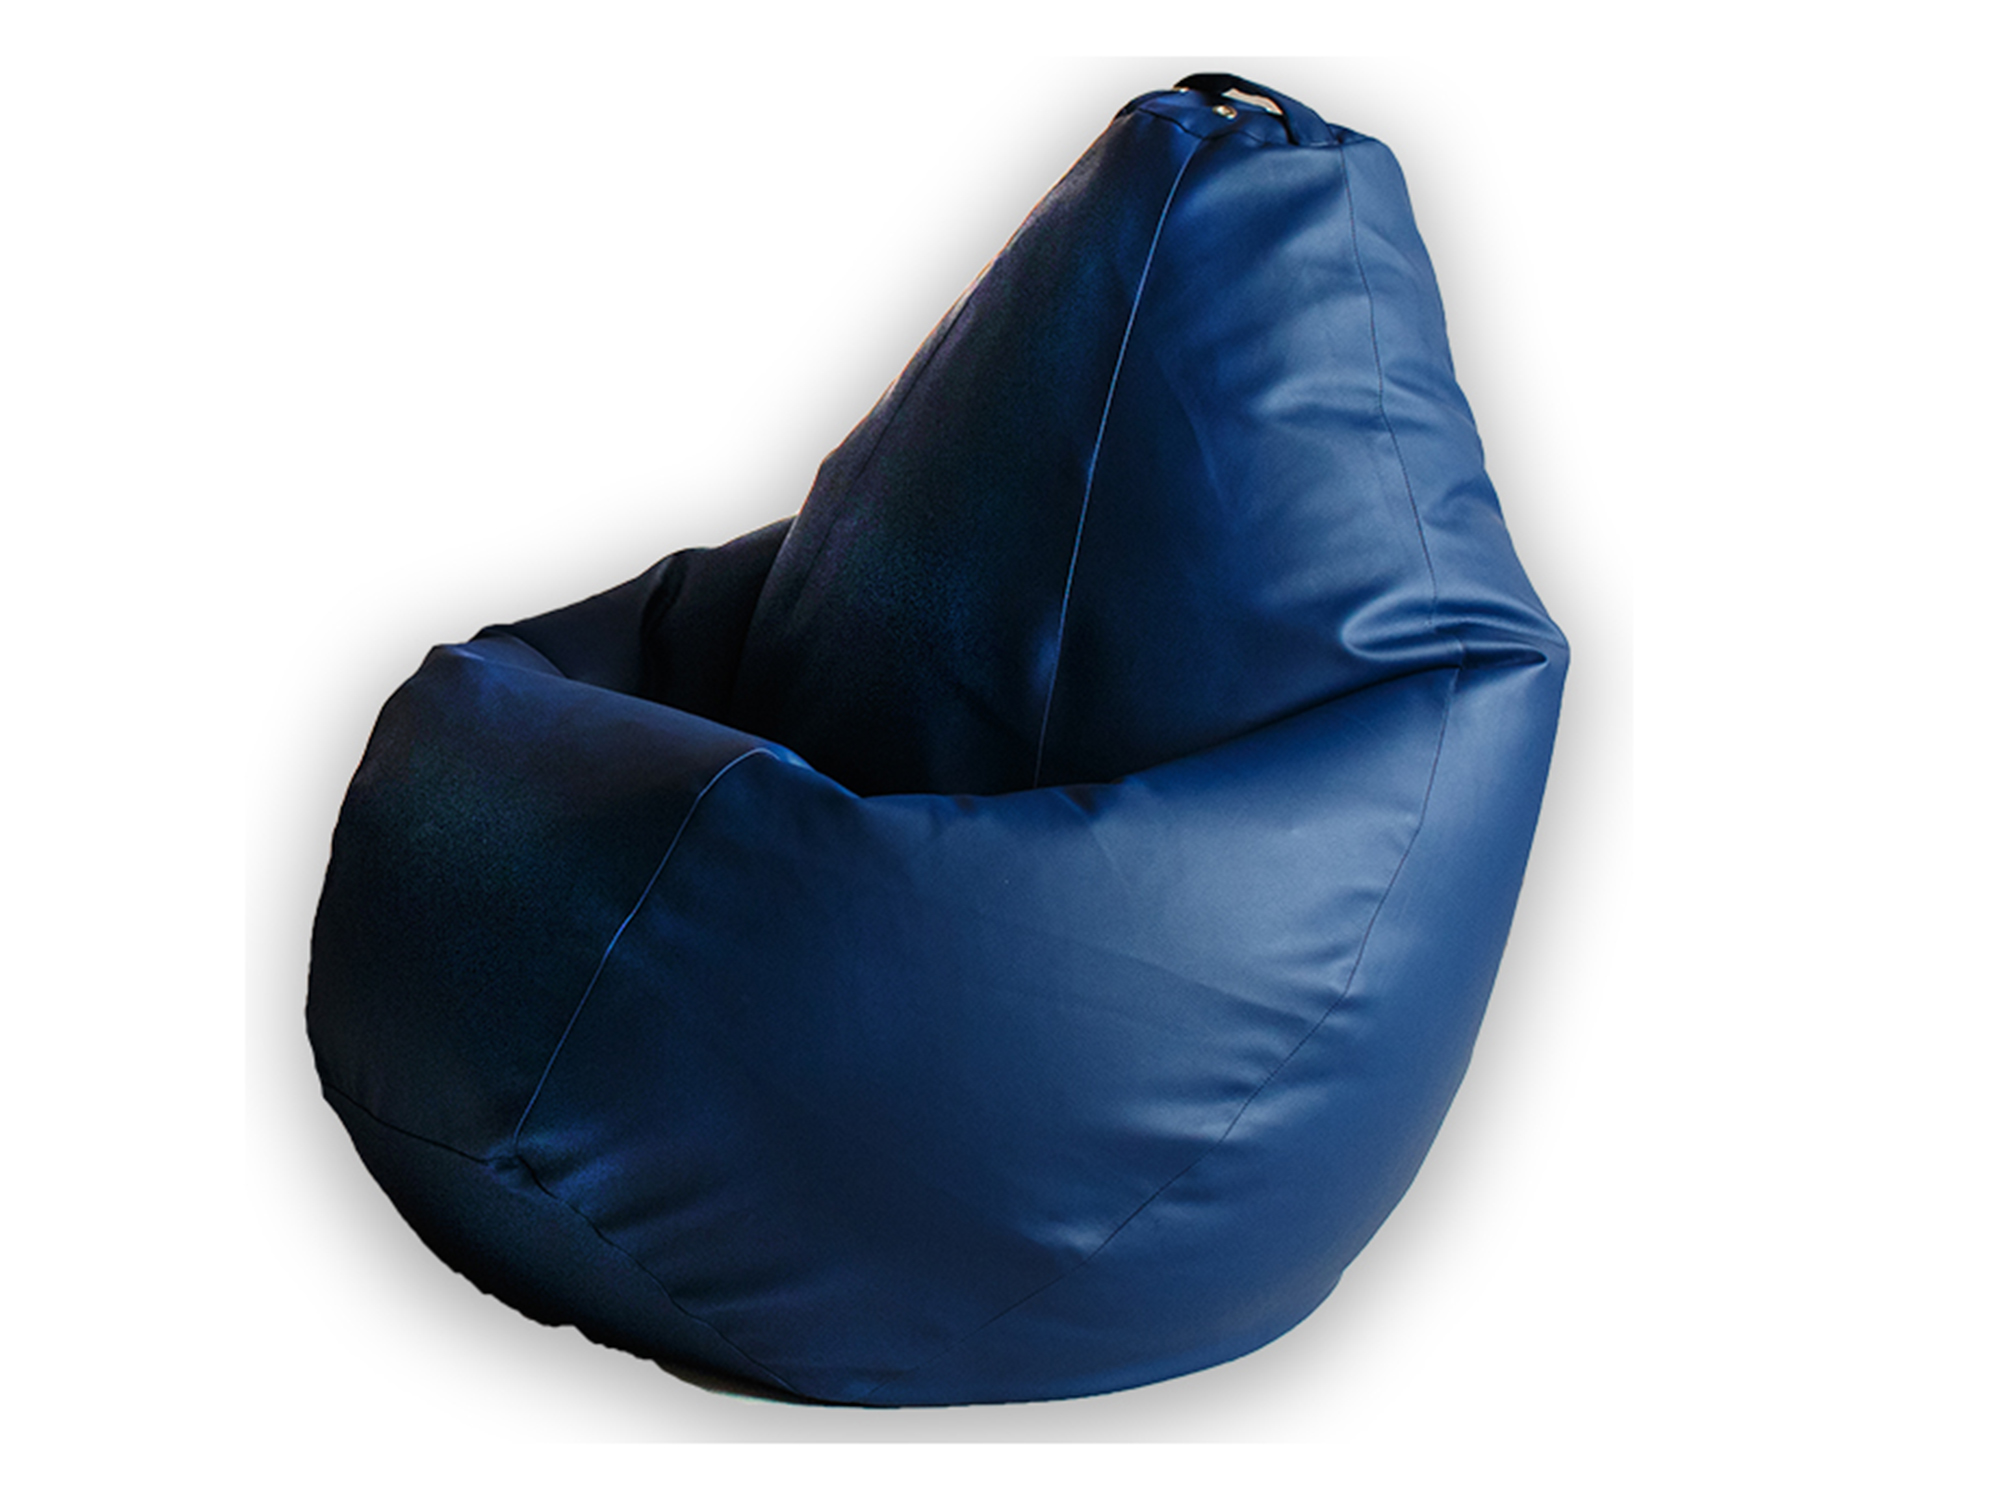 Кресло Мешок XL 125х85 MebelVia , Синий, Экокожа кресло мешок темно синее оксфорд xl 125х85 mebelvia синий оксфорд